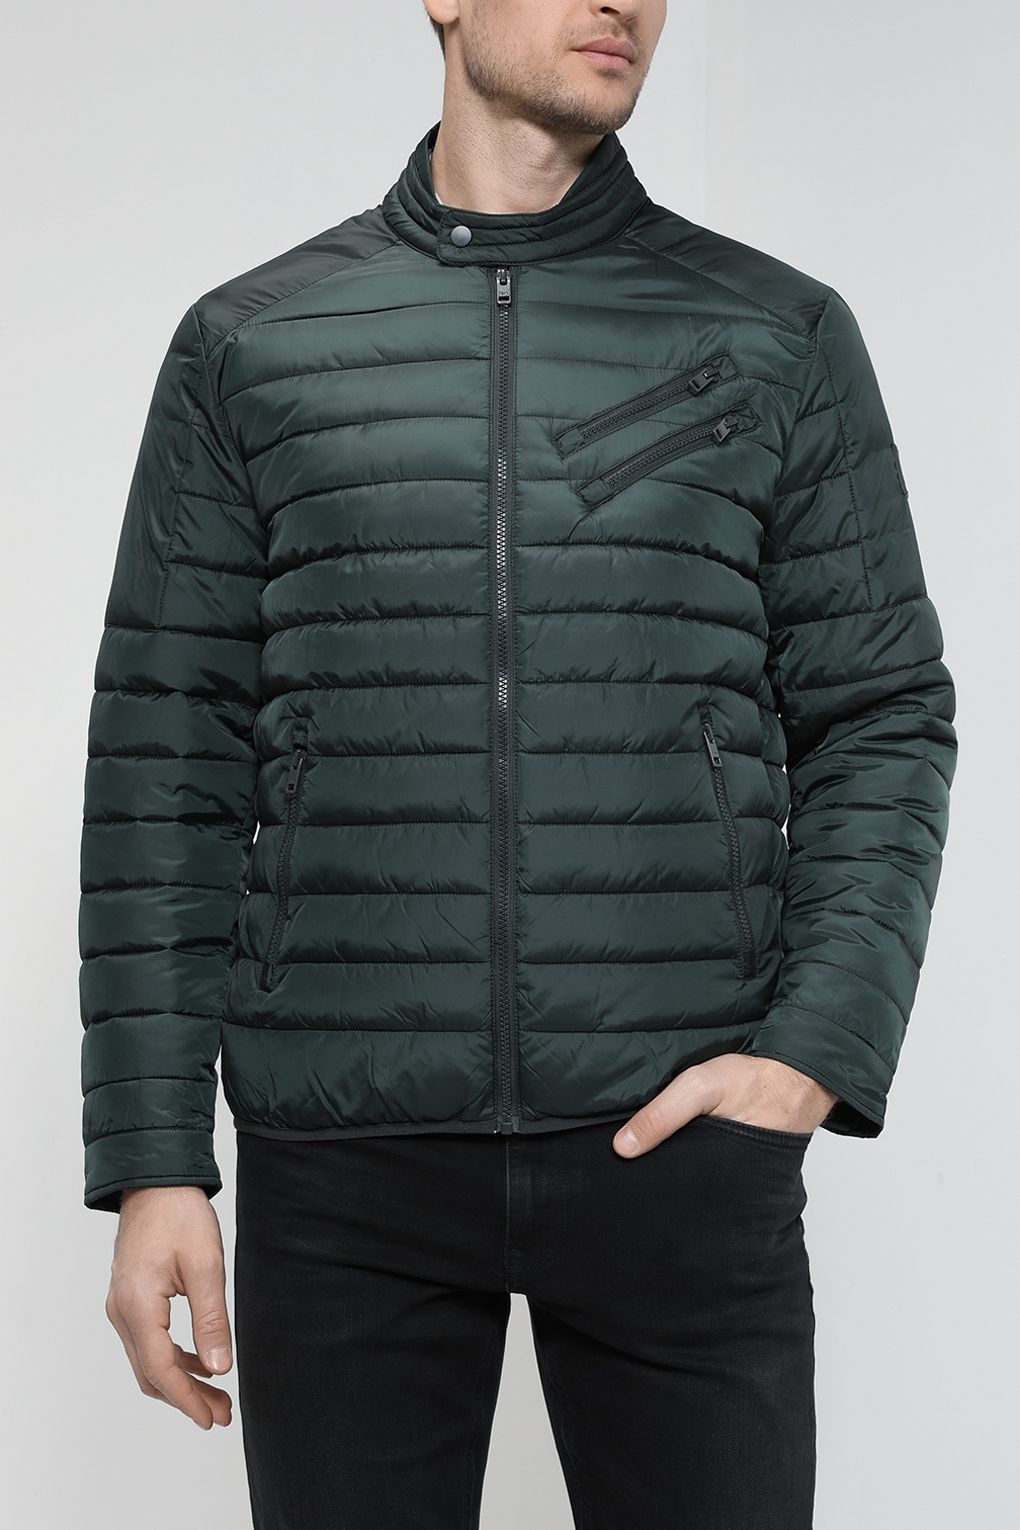 Куртка мужская Loft LF2027666 зеленая XL